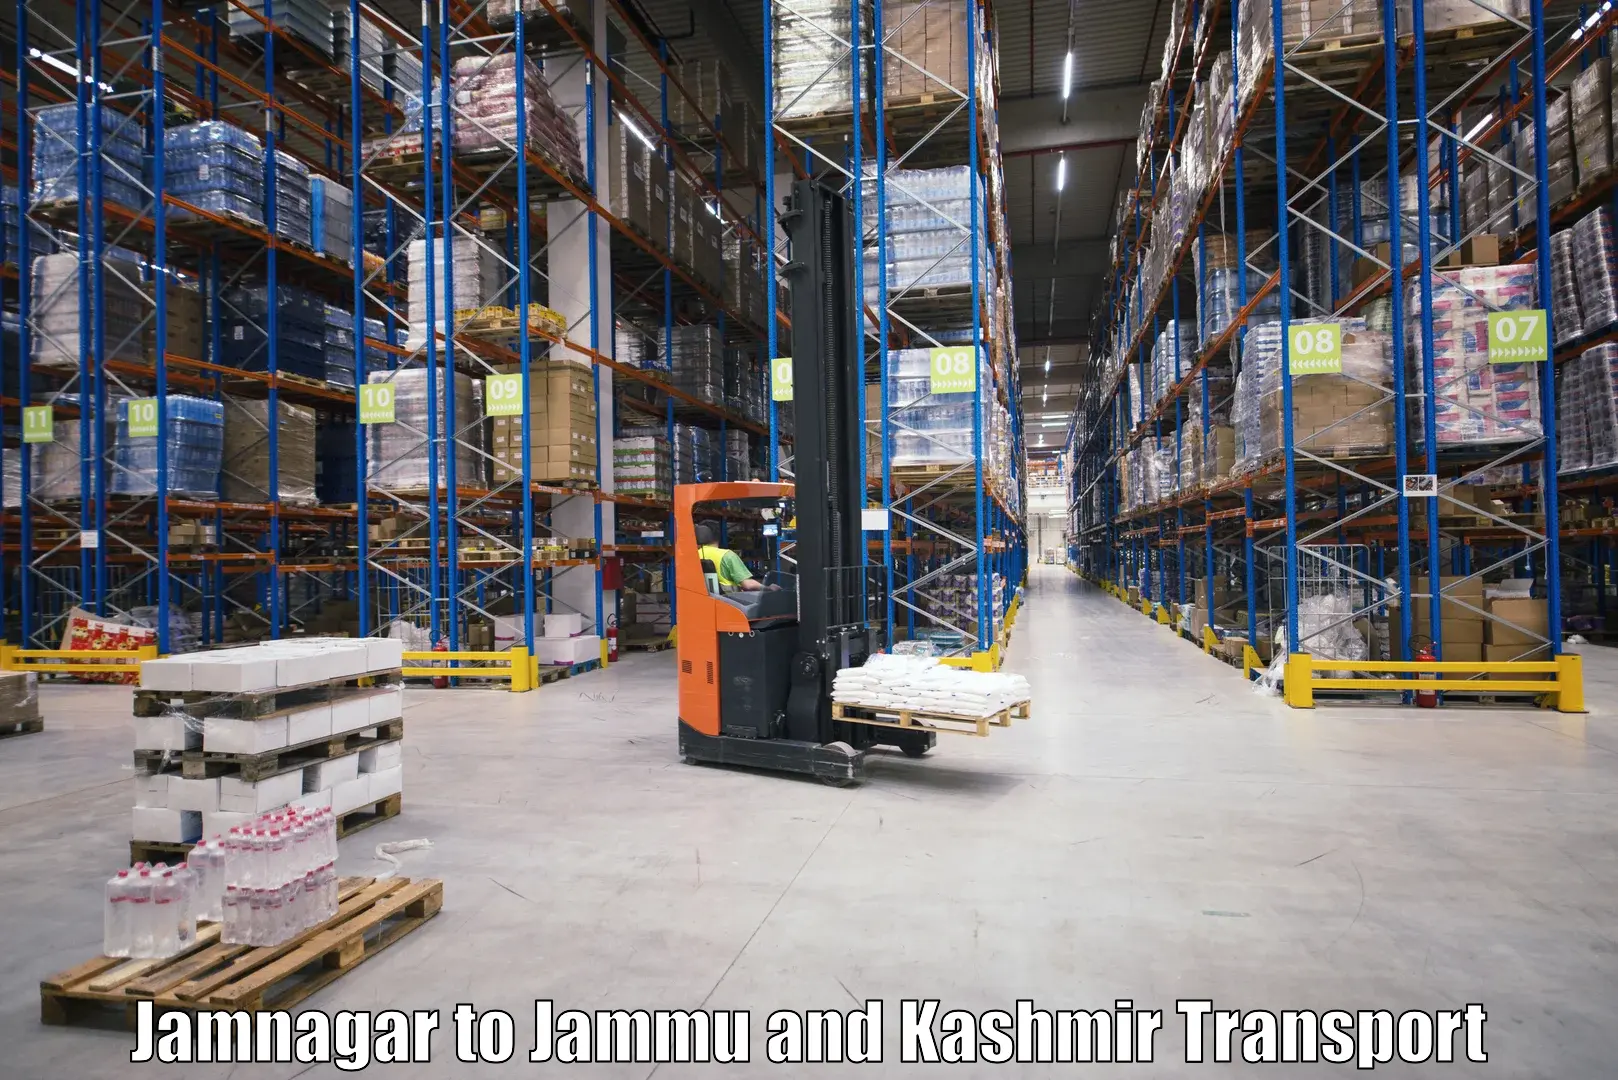 Air freight transport services Jamnagar to Jammu and Kashmir